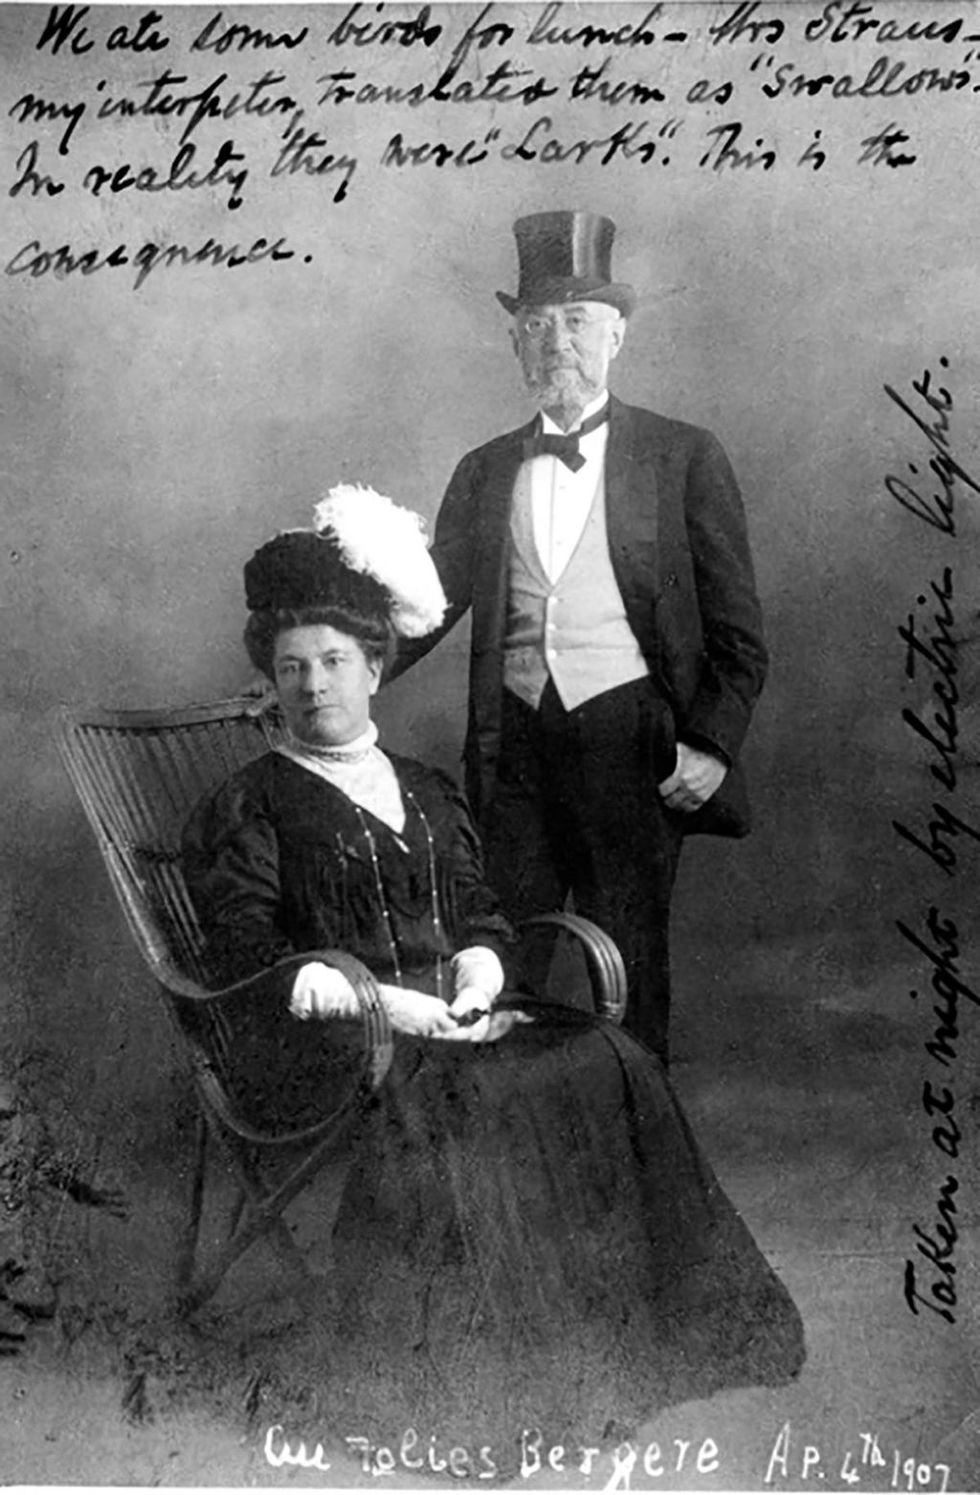 <p><span>1845年2月6日、ドイツのオッテンブルクで生まれたイジドー。1850年中頃にジョージア、その後アメリカに移住し、ニューヨークでアイダと運命の出会いを果たす。1871年、26歳だったイジドーは、22歳のアイダにプロポーズ。「彼らは愛し合っていました。街中で手を繋いだり、キスをしたり、ハグしたりもしていました。当時、彼のように社会的地位も経済力もある男性が人前で愛情表現を披露するのは、とてもめずらしいとされていました」「ある時なんて、人目もはばからず愛撫したりもしていたようです！　イジドー＆アイダは、強い絆で結ばれ、最後までお互いを愛し続けました。私たち子孫もそれを誇りに思っています」とクスマン氏。</span></p>